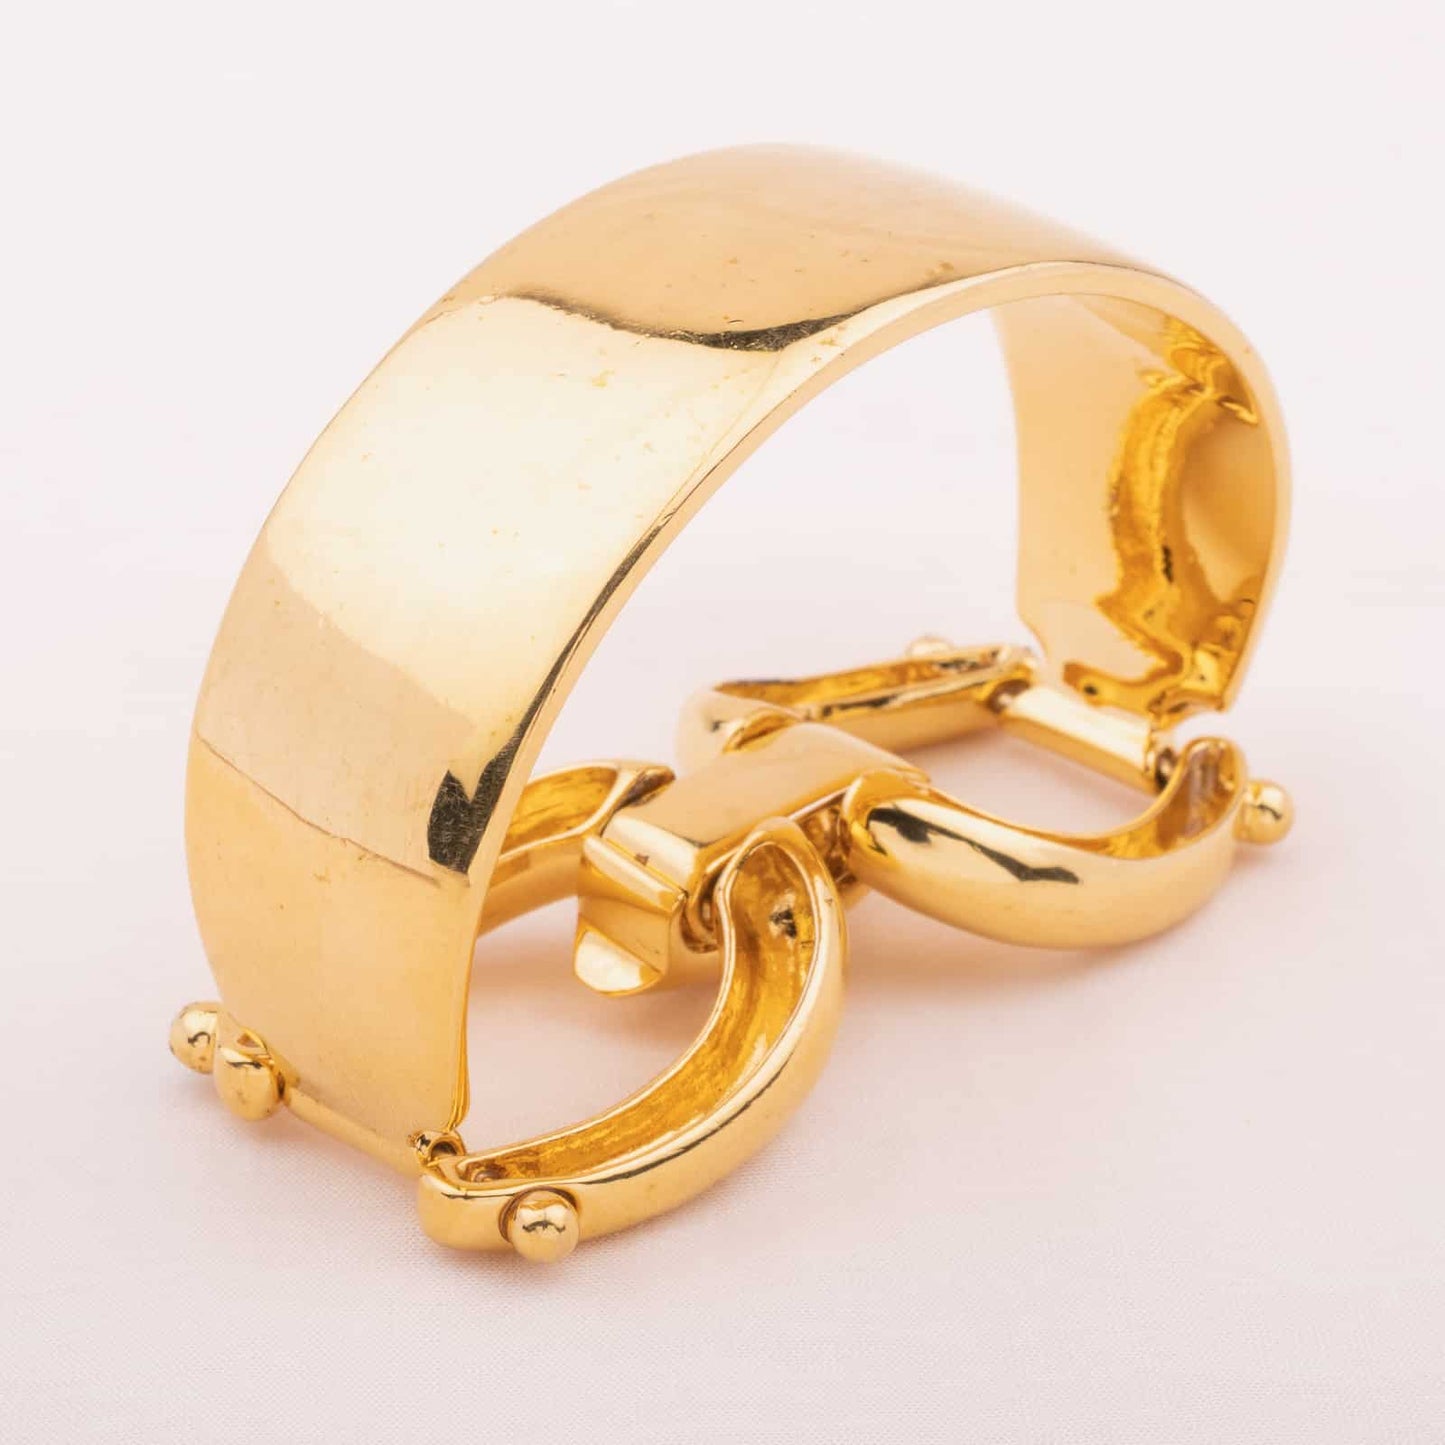 Ralph-Lauren-breites-vergoldetes-Armband-mit-Trensen-Verschluss-Rückseite